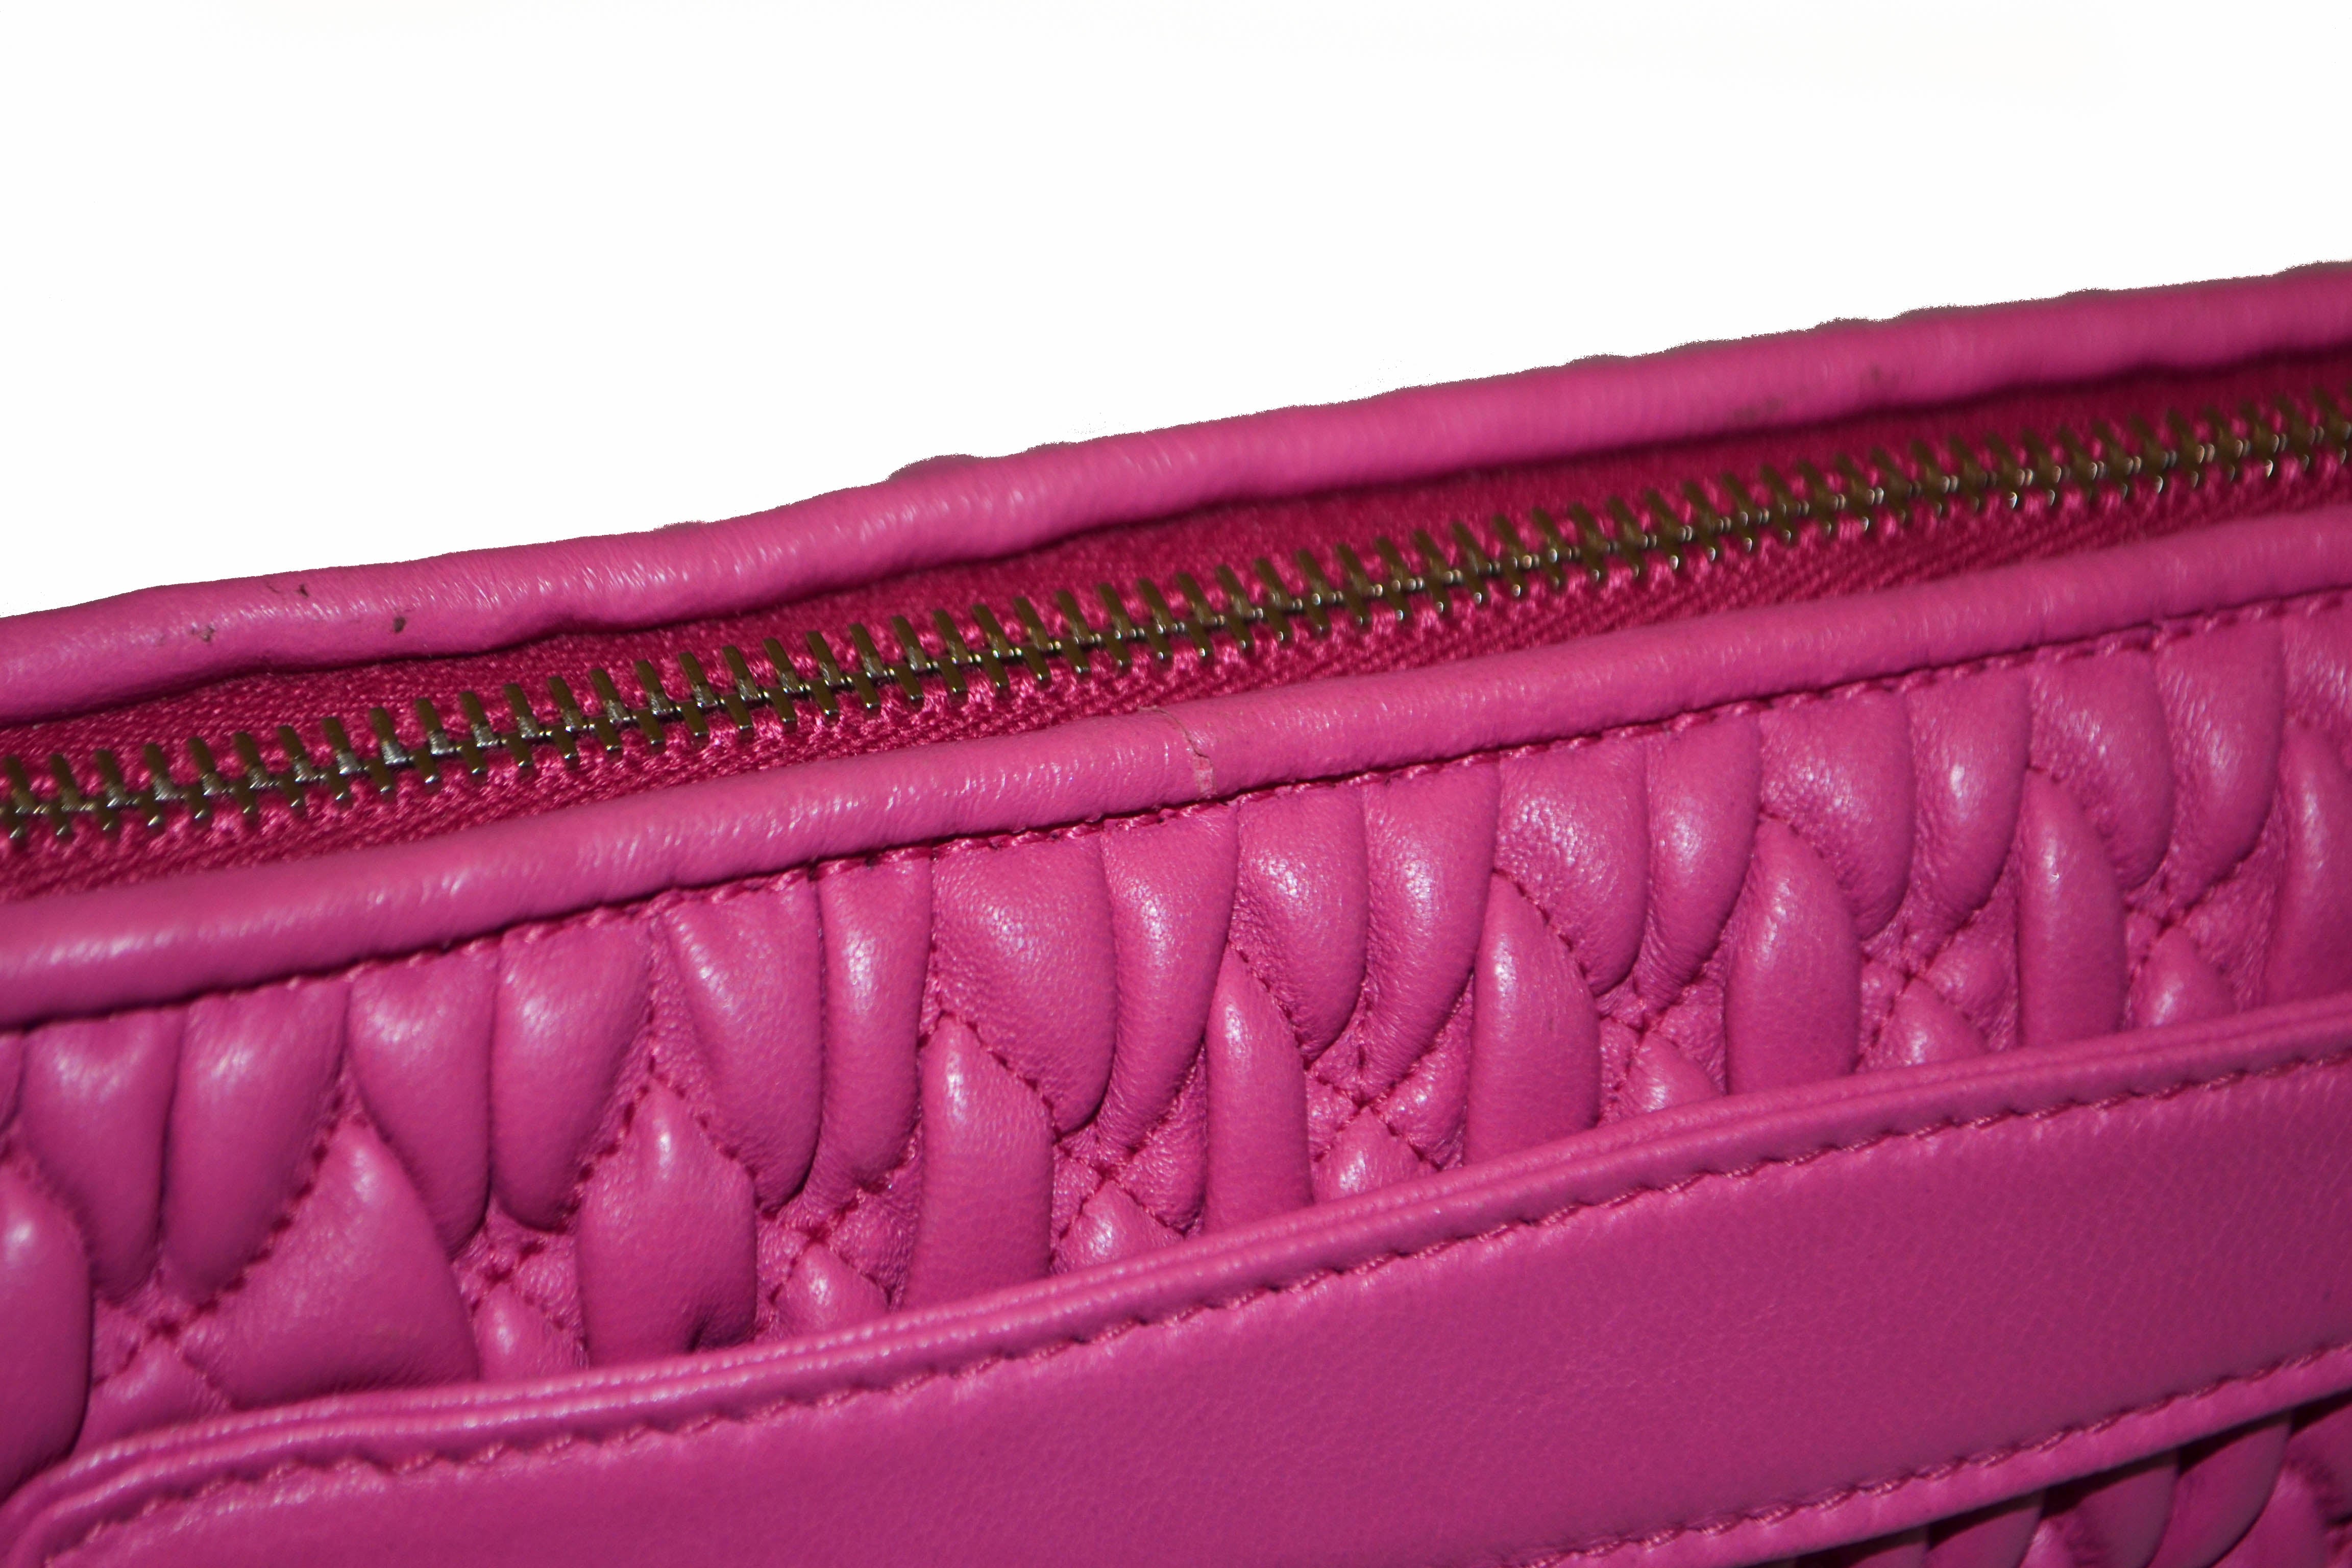 Authentic Miu Miu Pink Matelasse Nappa Leather Clutch